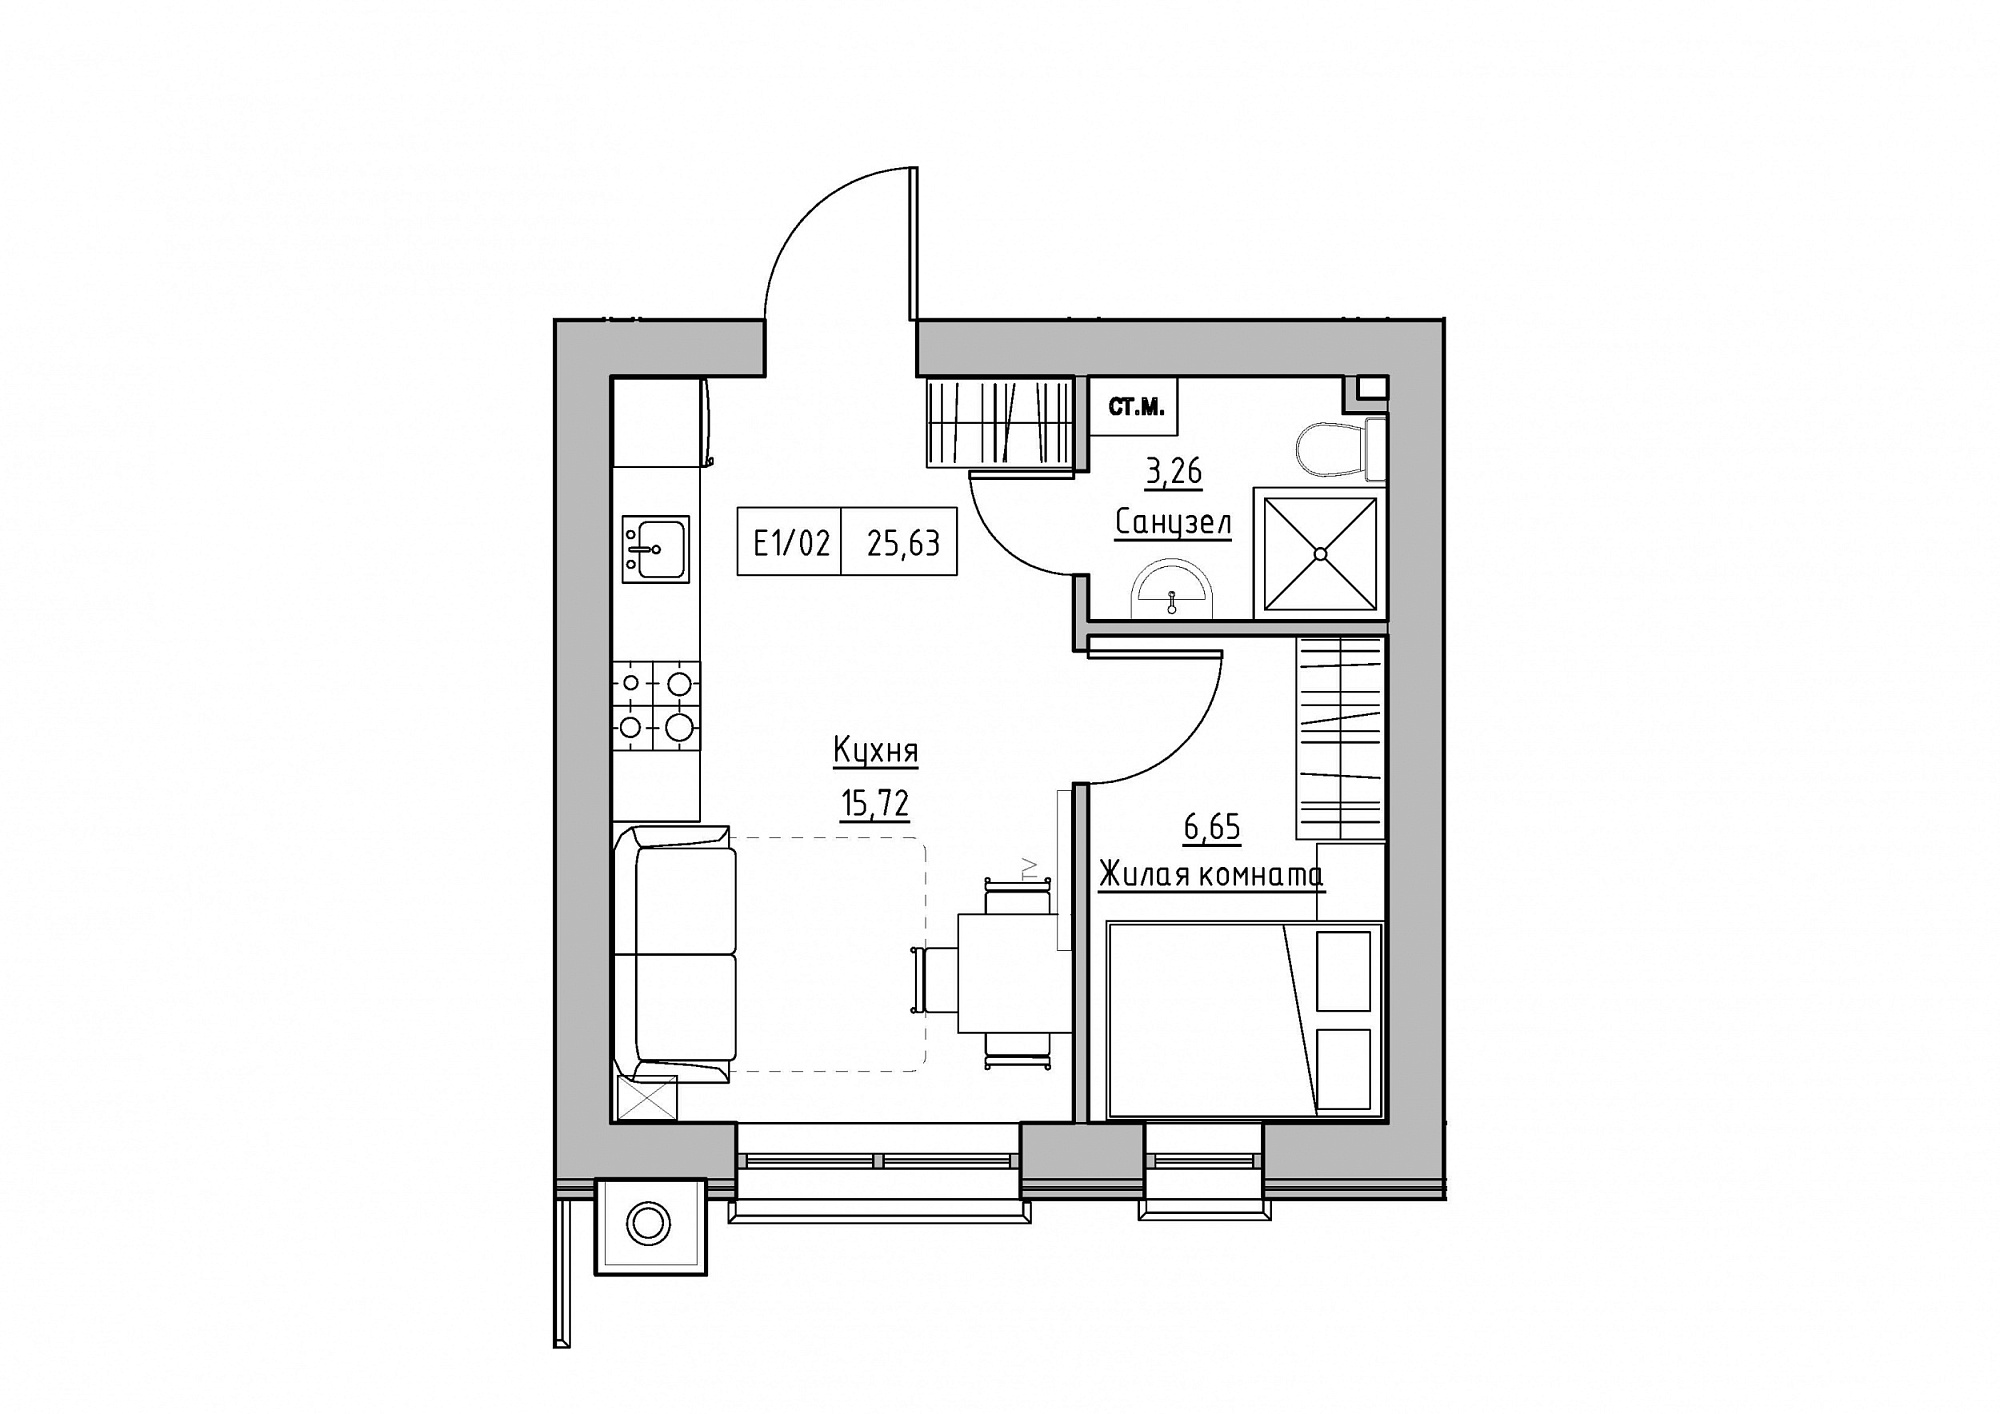 Планировка 1-к квартира площей 25.63м2, KS-012-03/0004.